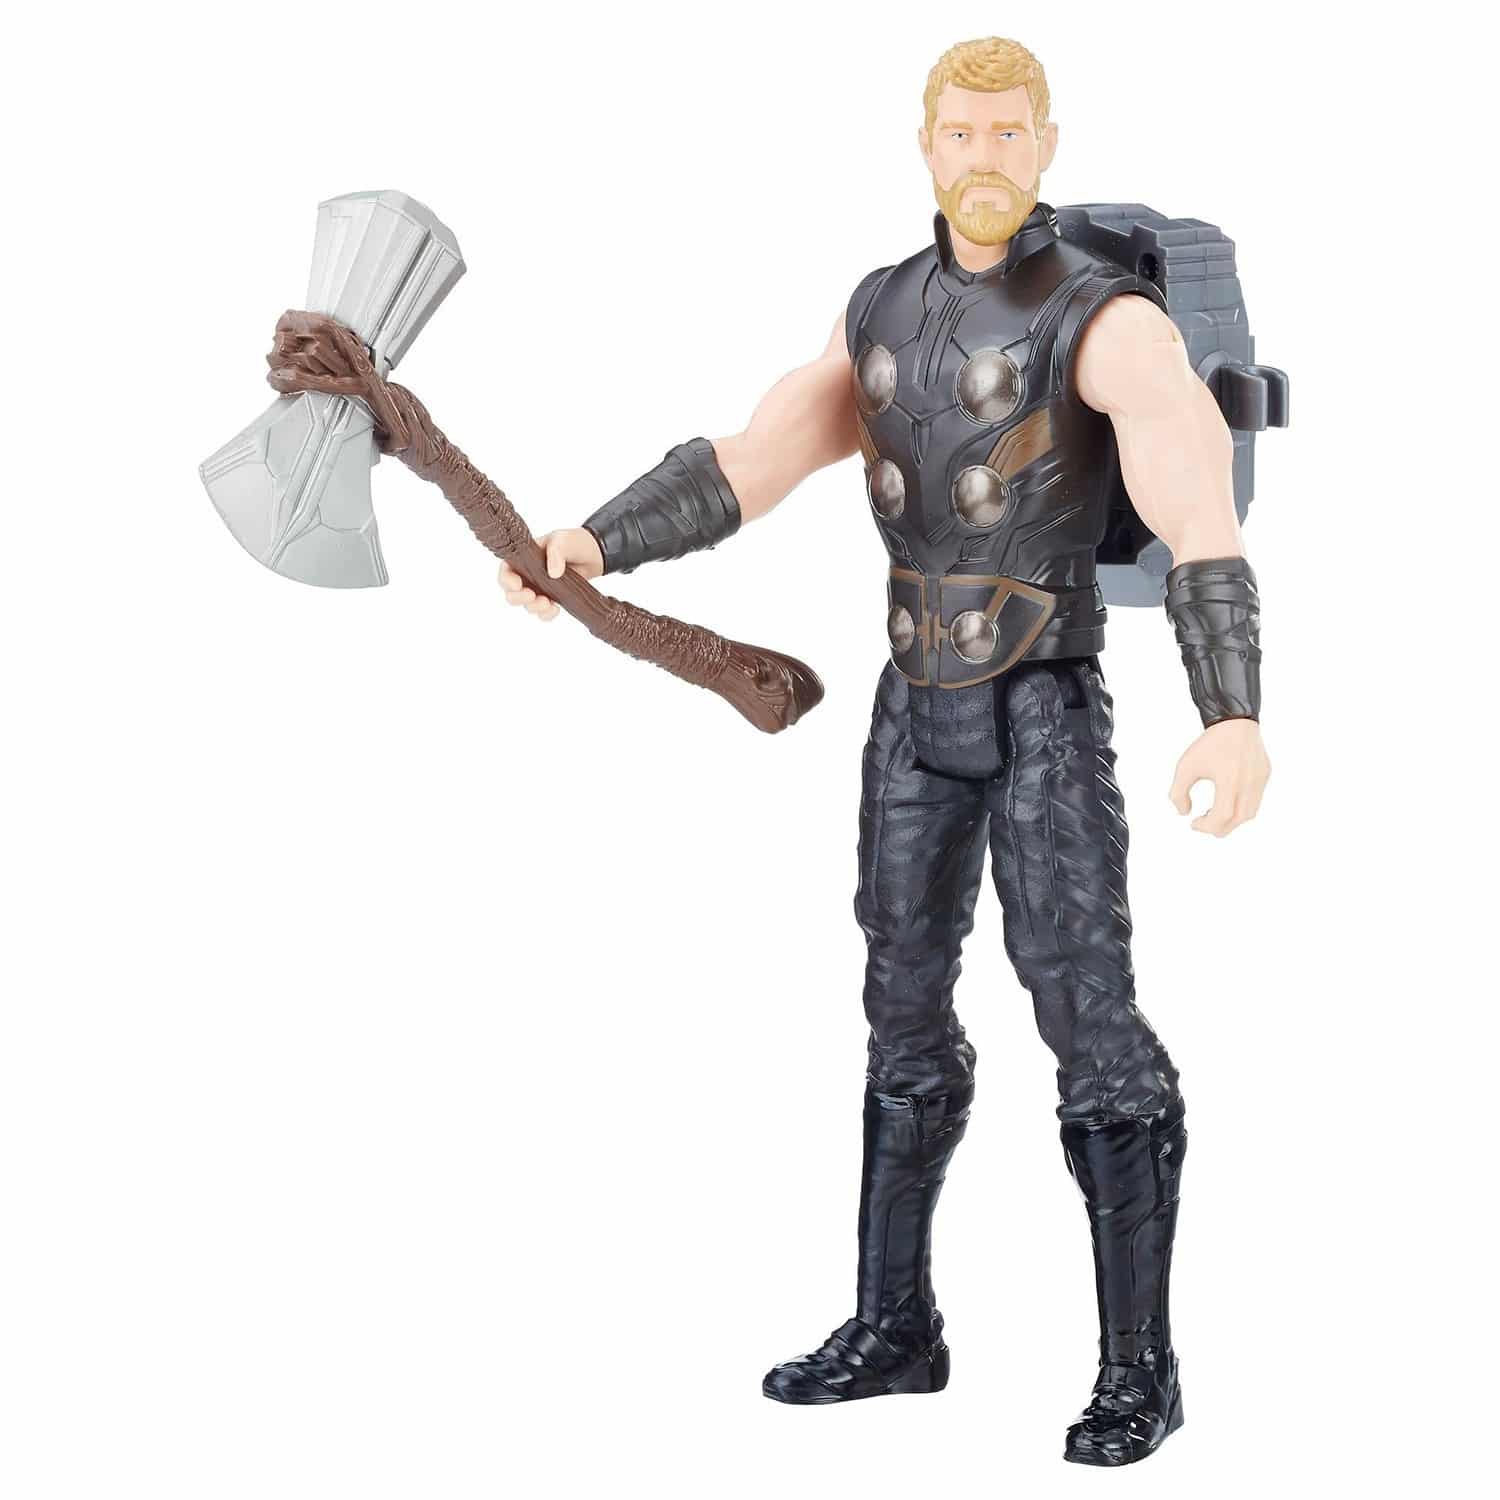 Marvel Avengers - Infinity War - Titan Hero Power FX - Thor